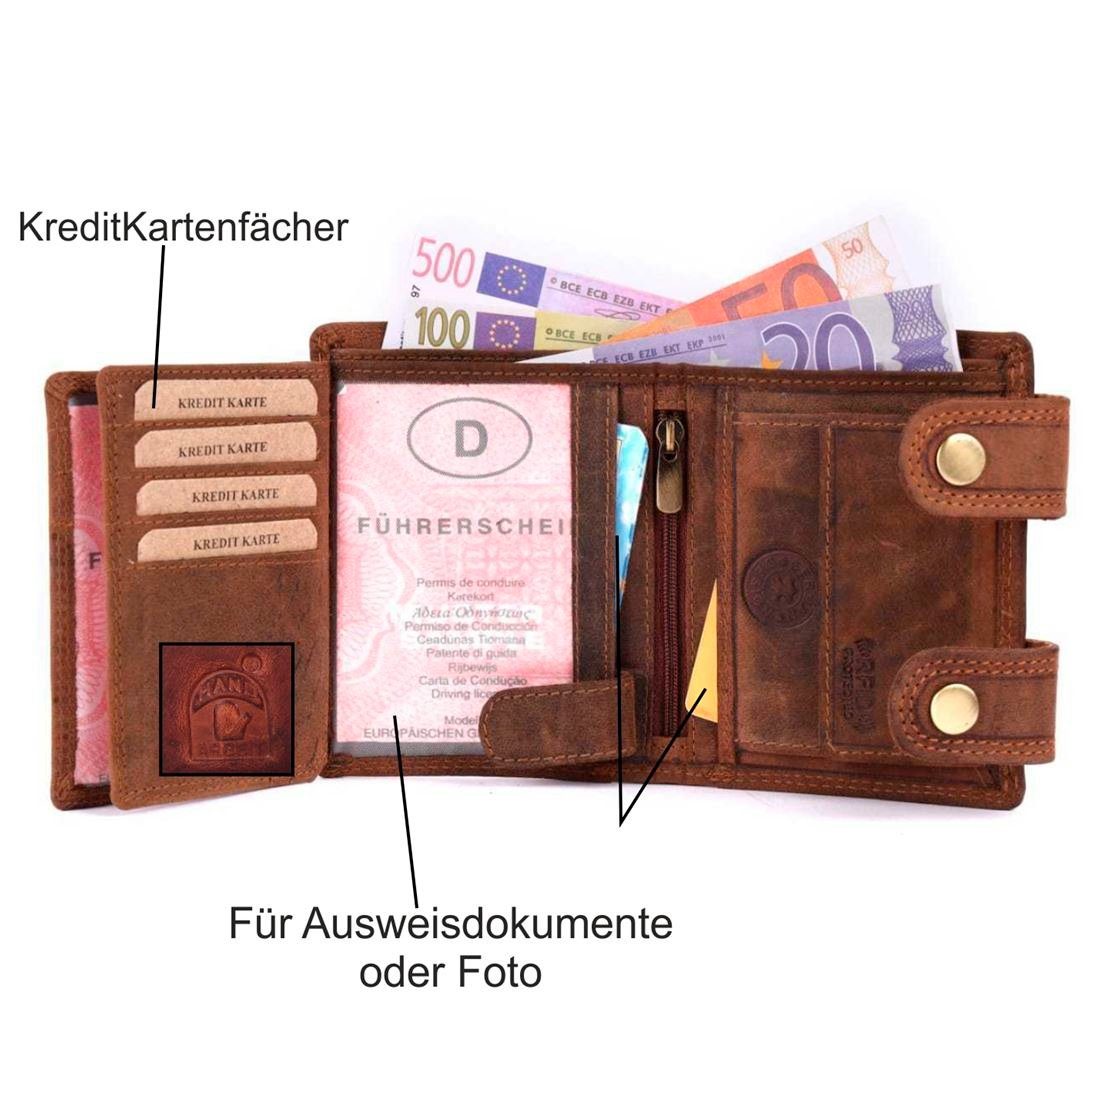 SHG mit mit Kette Lederbörse Münzfach Geldbörse Leder Schutz Büffelleder Herren RFID Portemonnaie, Börse